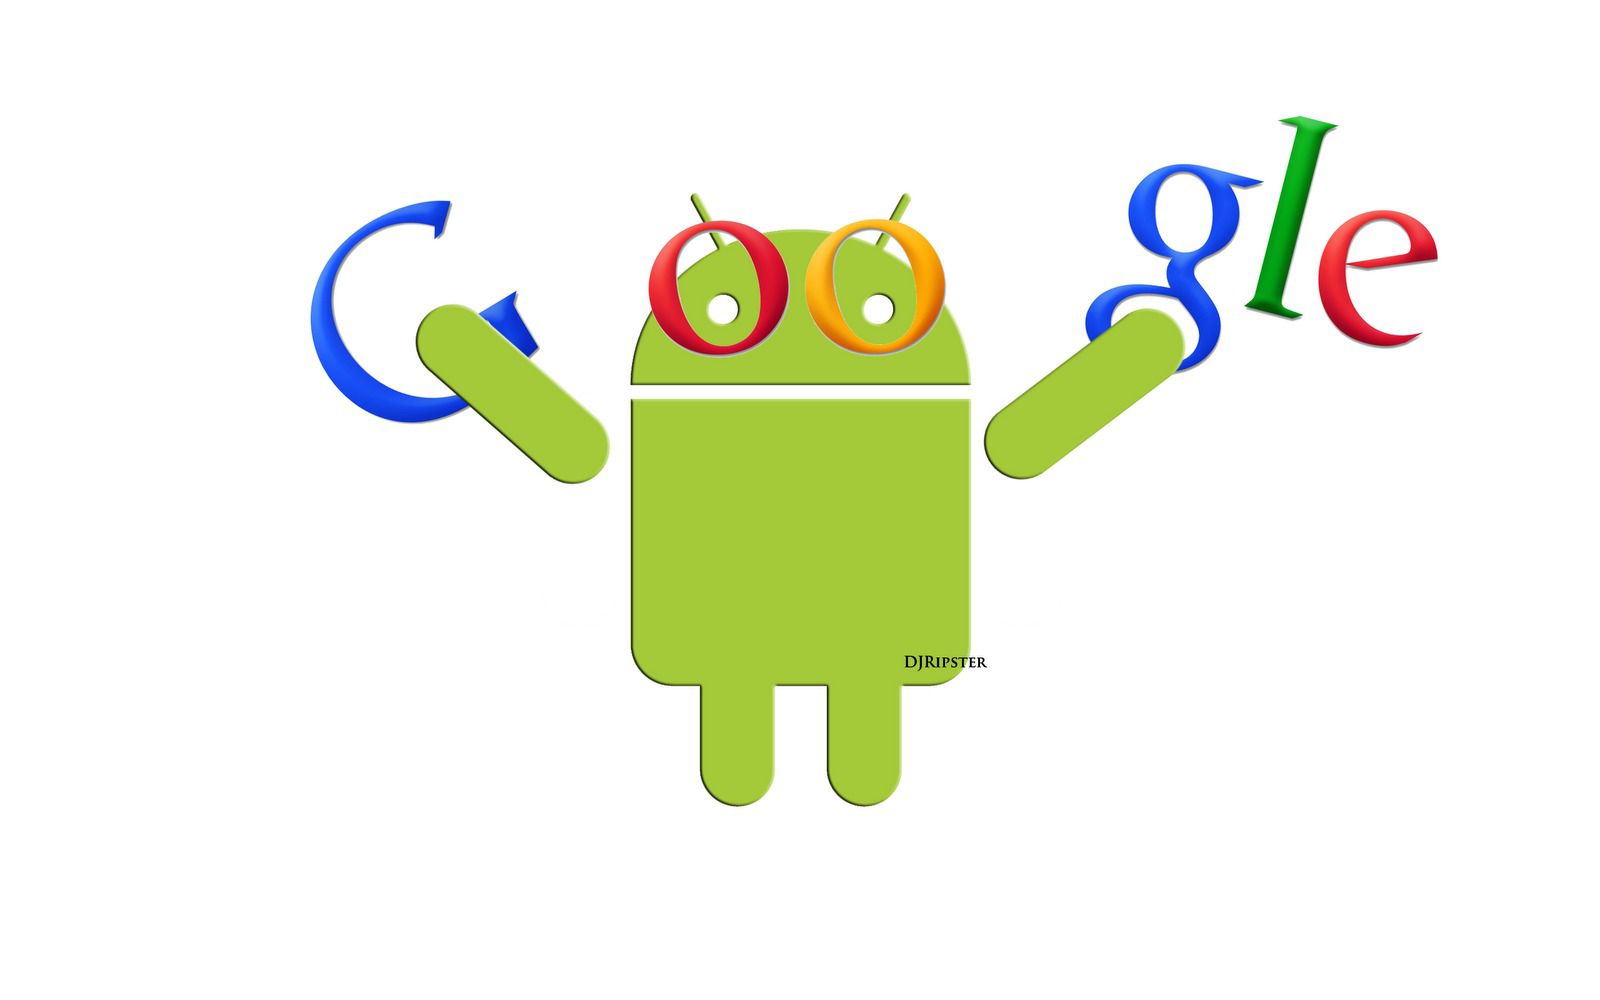 Google припинить підтримку магазину додатків. Google Play з'явився лише на пристроях під управлінням Android 2.2 Froyo, власники всіх смартфонів і інших апаратів на базі Eclair і ще старіших версій мобільної ОС не зможуть встановлювати додатки з офіційного джерела, повідомляє «3Dnews»